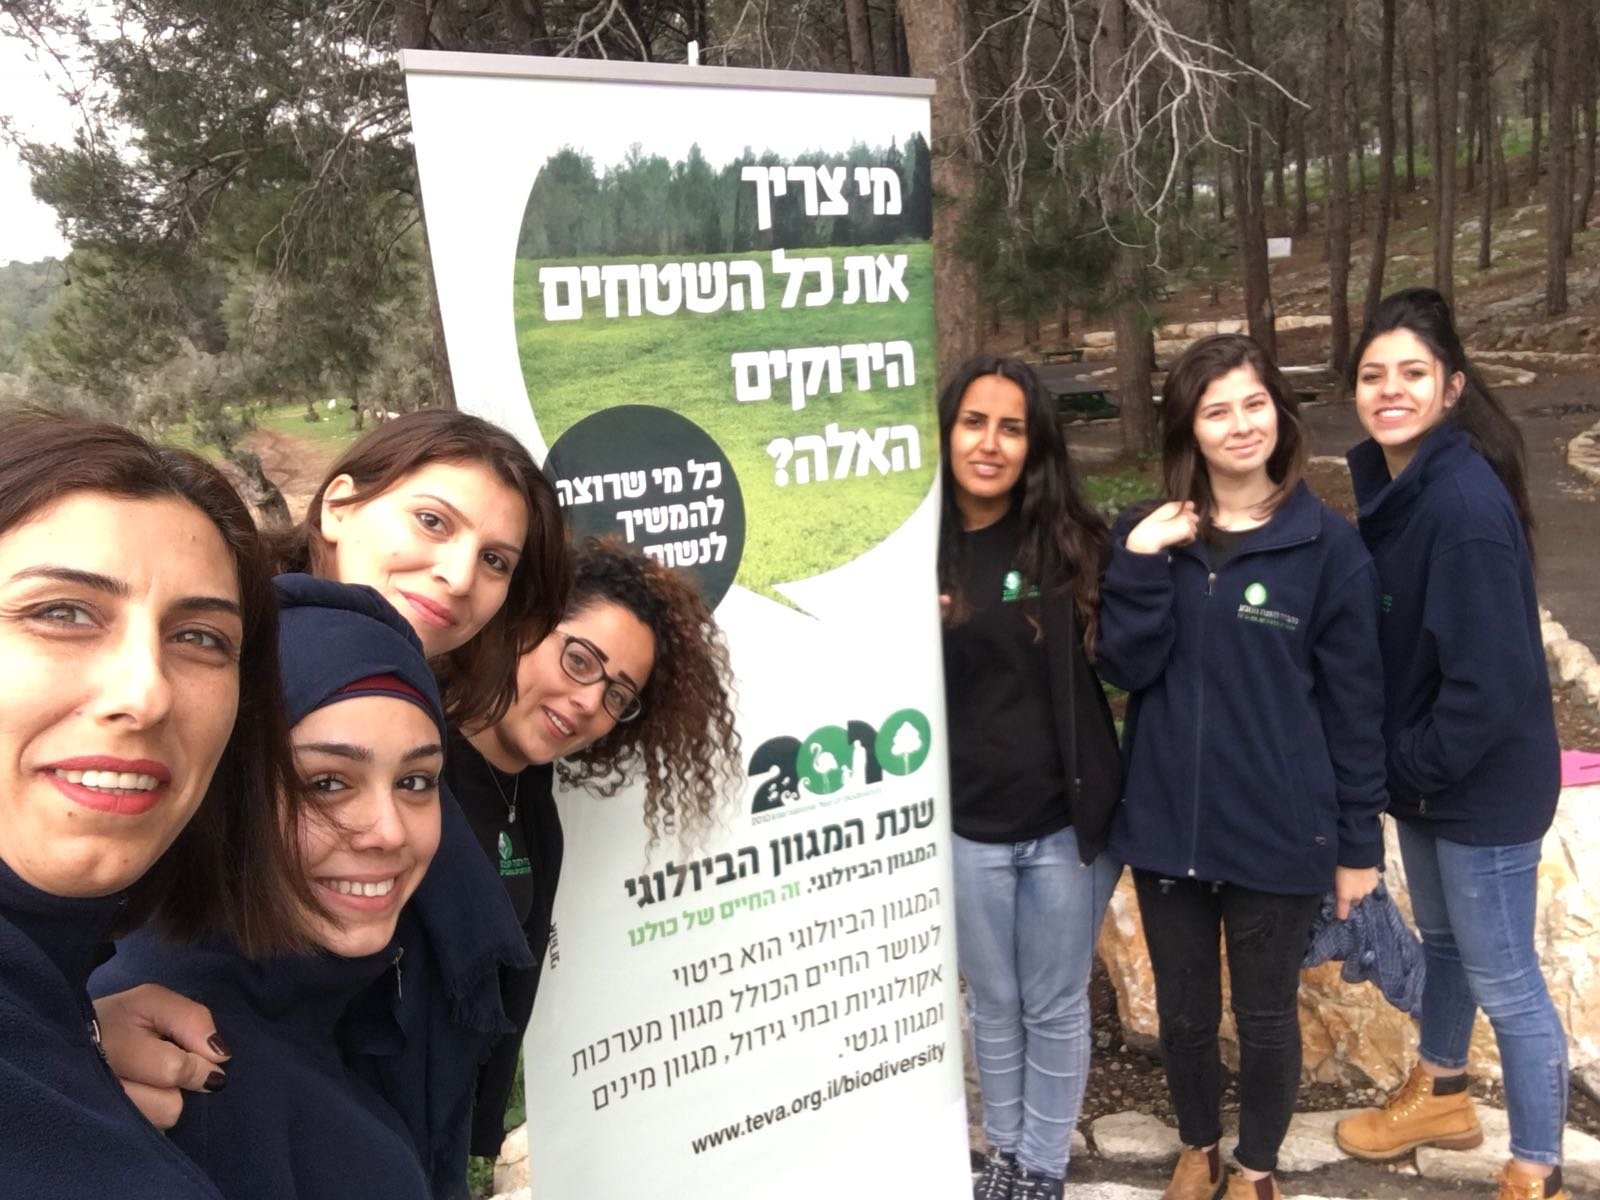 الابتدائيّة جولس "ب" تحتفل مع جمعيّة حماية الطّبيعة بعيد غرس الأشجار في حرش أحيهود-14